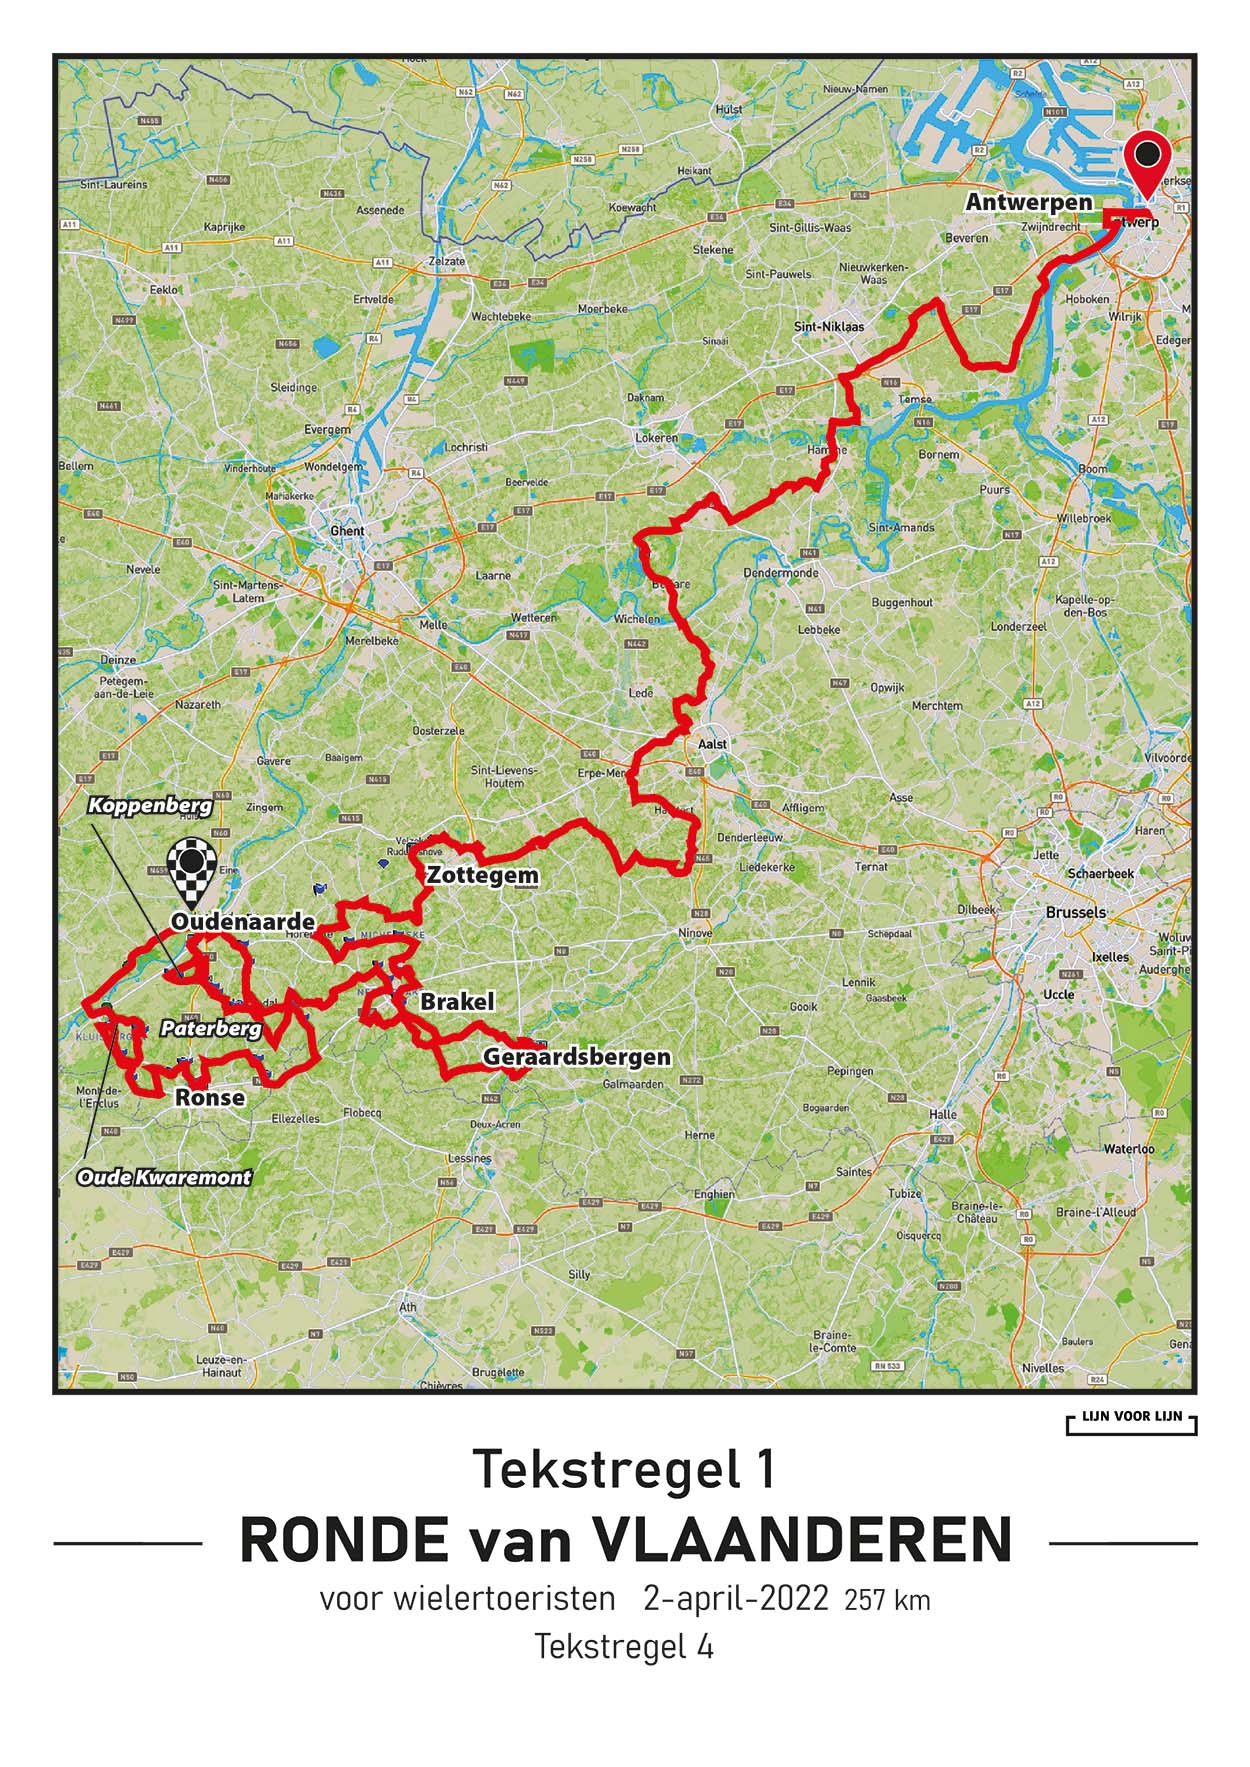 Ronde van Vlaanderen Cyclo 257km, 2022